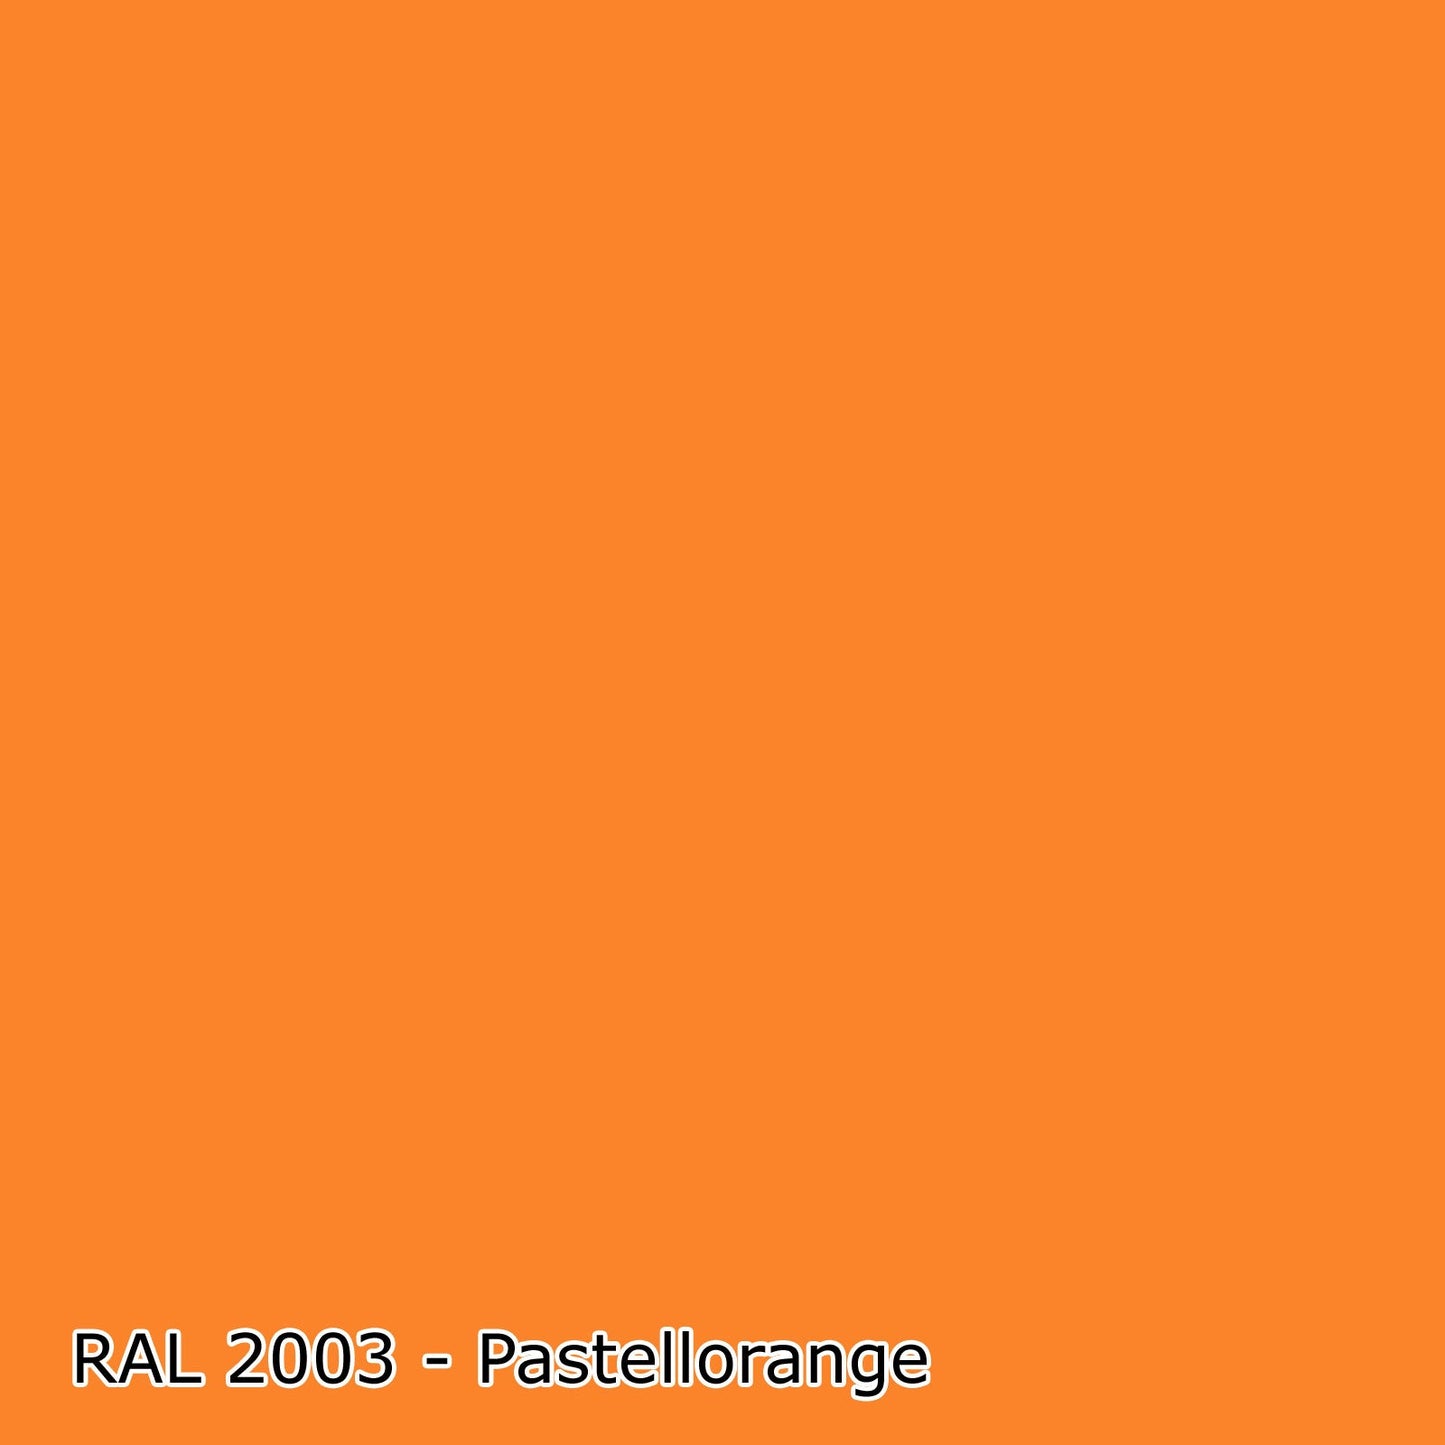 5 L Acryl Fassadenfarbe, RAL Farbwahl - MATT (RAL 1000 - 6007)